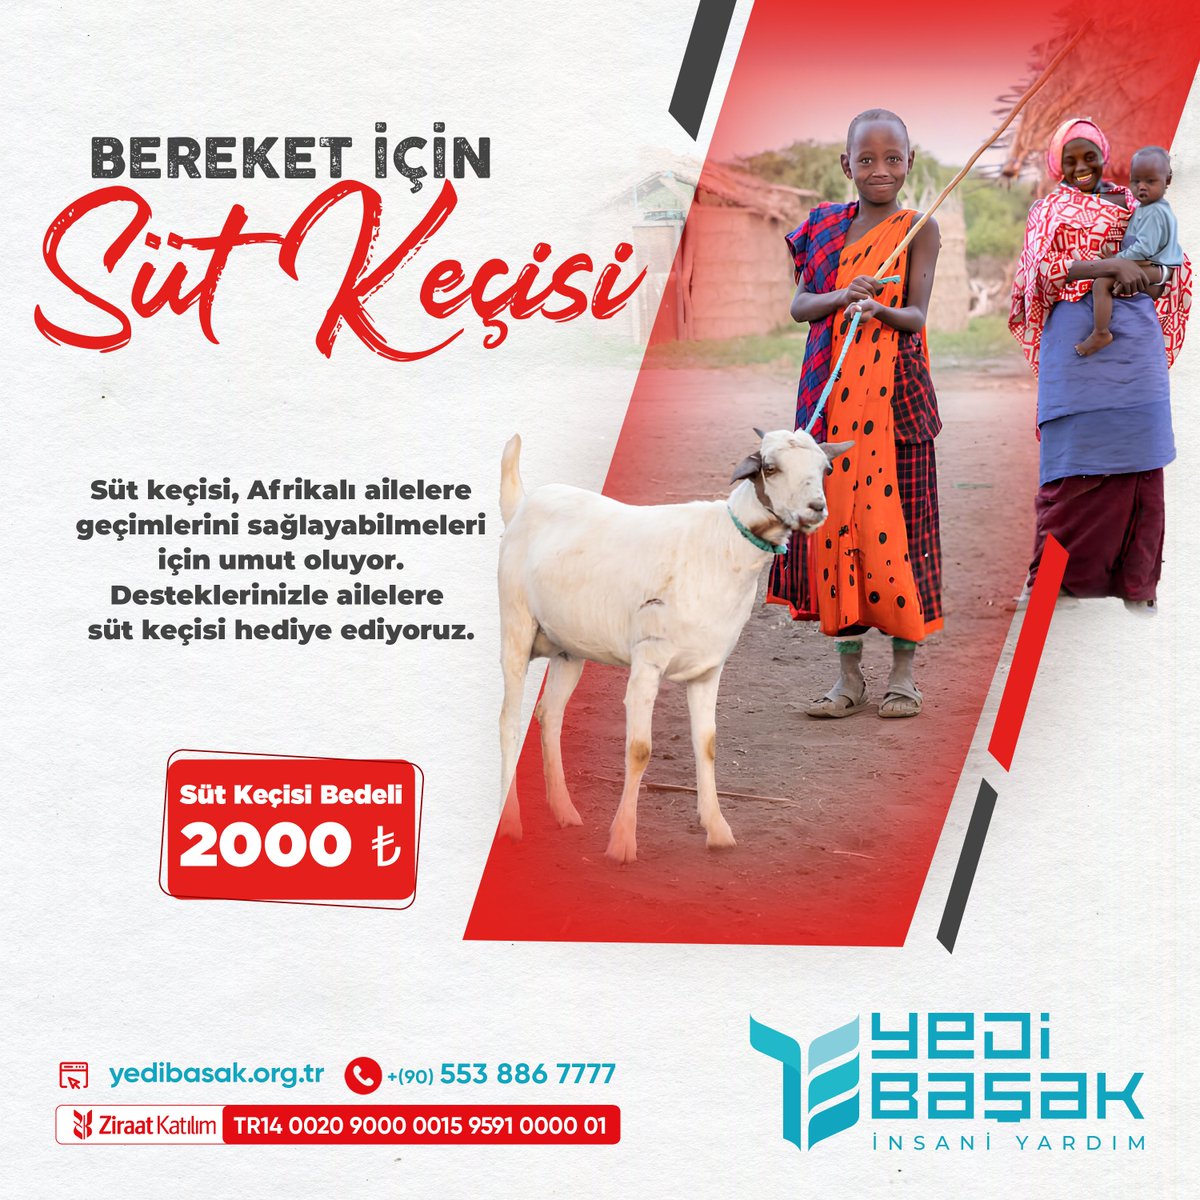 BEREKET İÇİN SÜT KEÇİSİ Süt keçisi, Afrikalı ailelere geçimlerini sağlayabilmeleri için umut oluyor. Desteklerinizle ailelere süt keçisi hediye ediyoruz. Hesap Adı: Yedi Başak İnsani Yardım Derneği IBAN No: TR14 0020 9000 0015 9591 0000 01 🌐 Online: bagis.yedibasak.org.tr/bagis/sutkecisi